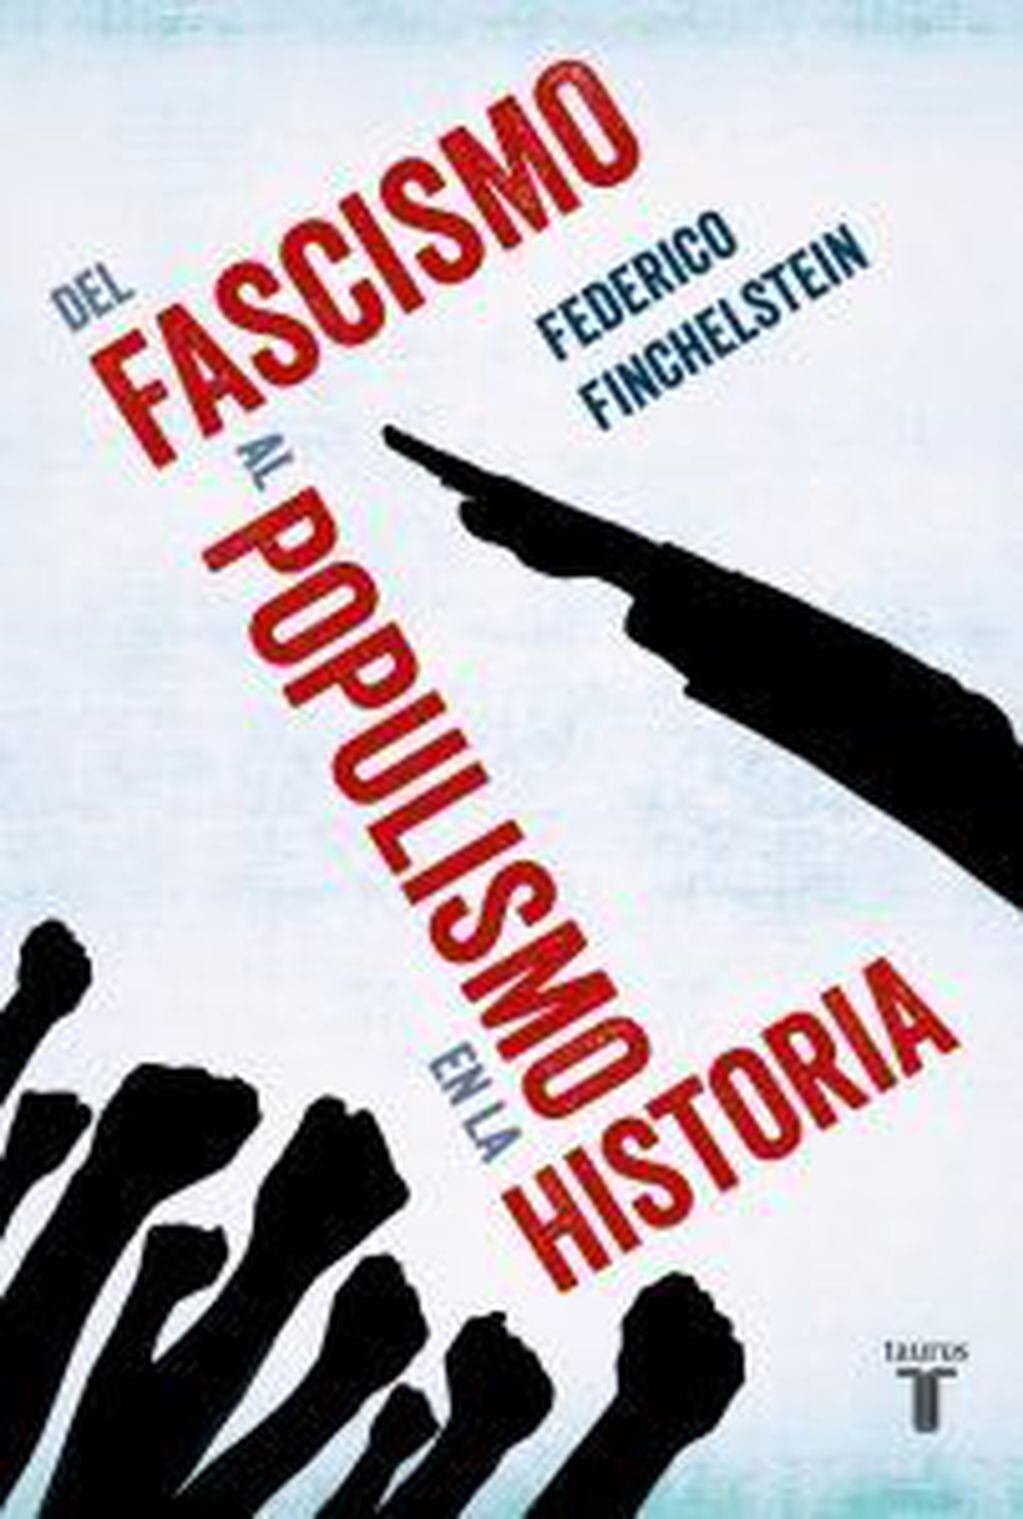 
Del fascismo al populismo en la historia. | El libro de Federico Finchelstein fue publicado por Taurus este año.
   